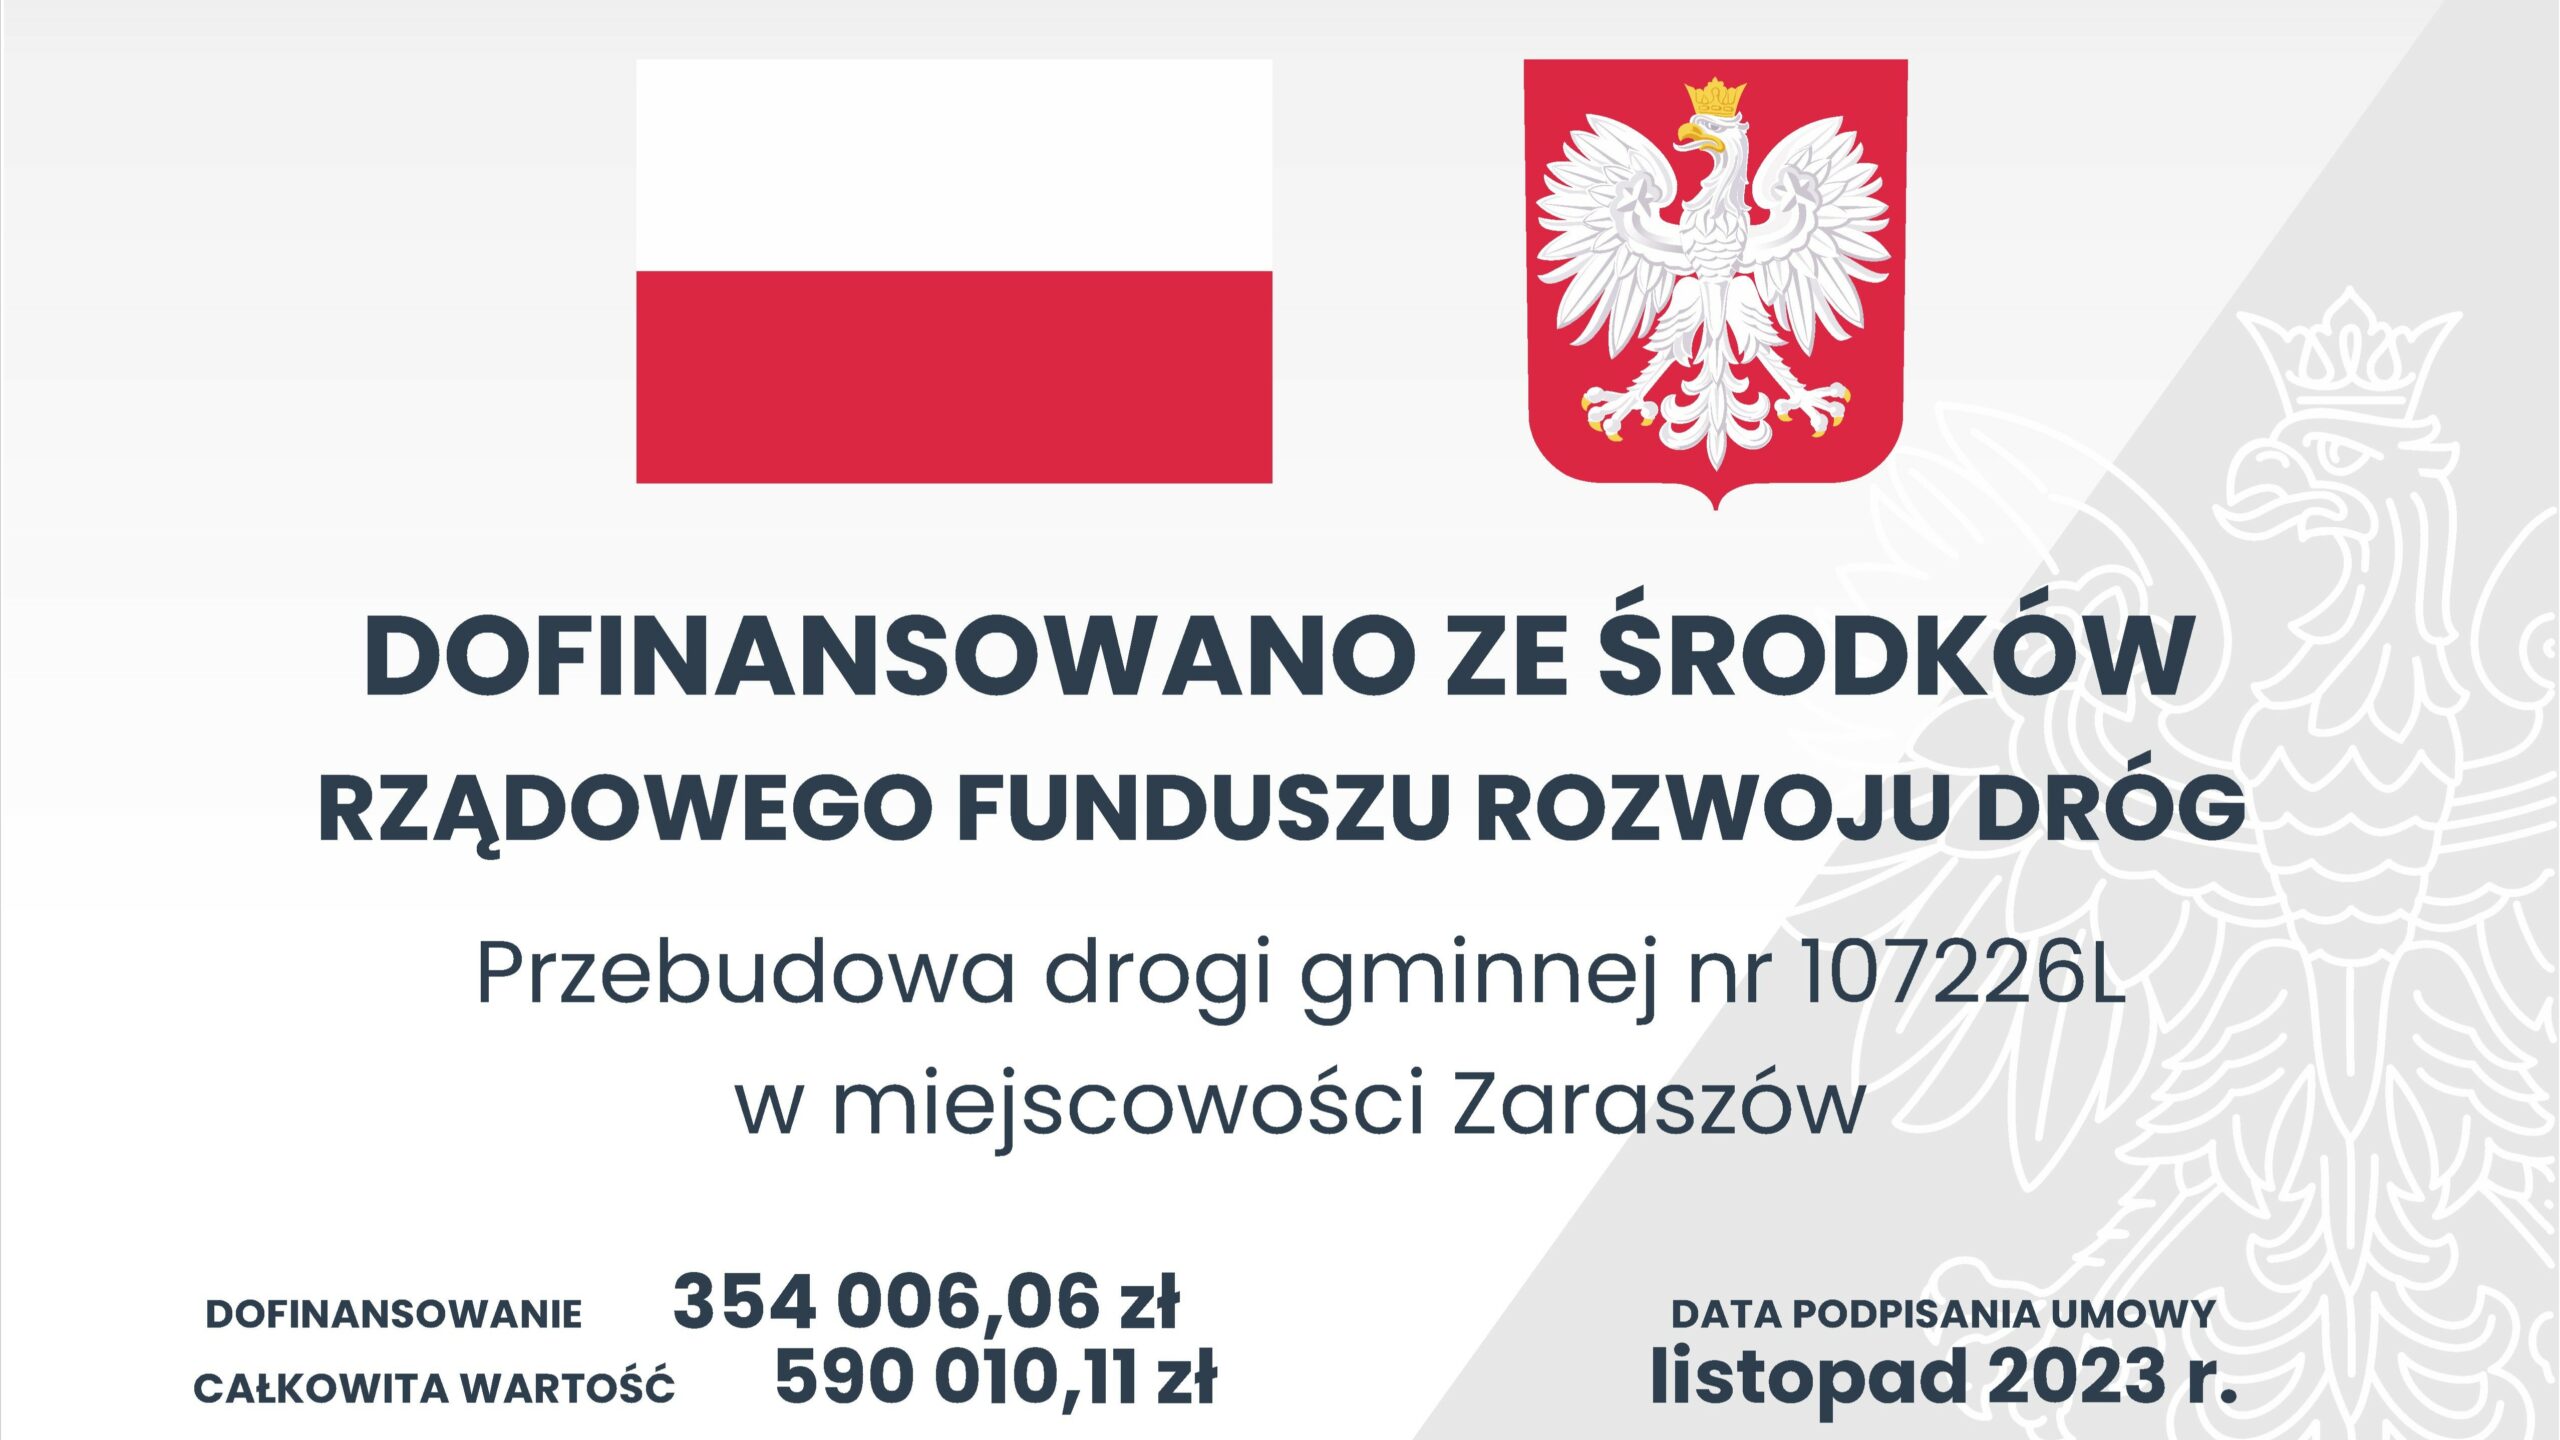 Przebudowa drogi gminnej nr 107226L w miejscowości Zaraszów